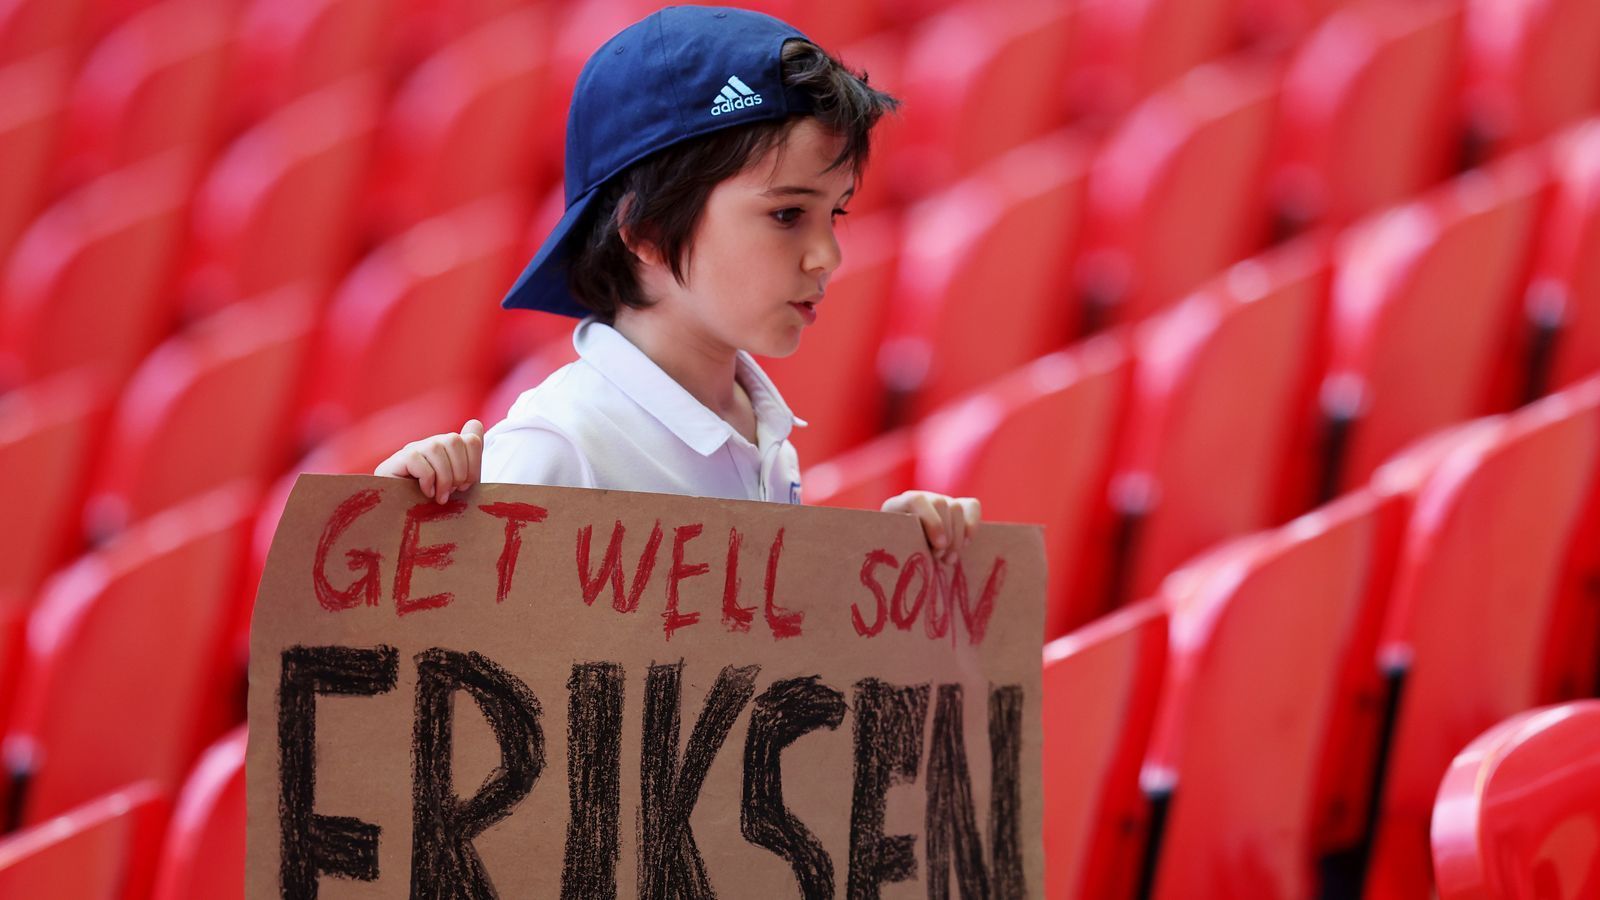 
                <strong>Get well soon Eriksen</strong><br>
                Im Wembleystadion selbst waren die Gedanken immer noch beim am Tag zuvor kollabierten Dänen Christian Eriksen, dem es mittlerweile wieder geht. Der Zustand des 29-Jährigen von Inter Mailand hatte sich nach Angaben des dänischen Verbandes stabilisiert. 
              